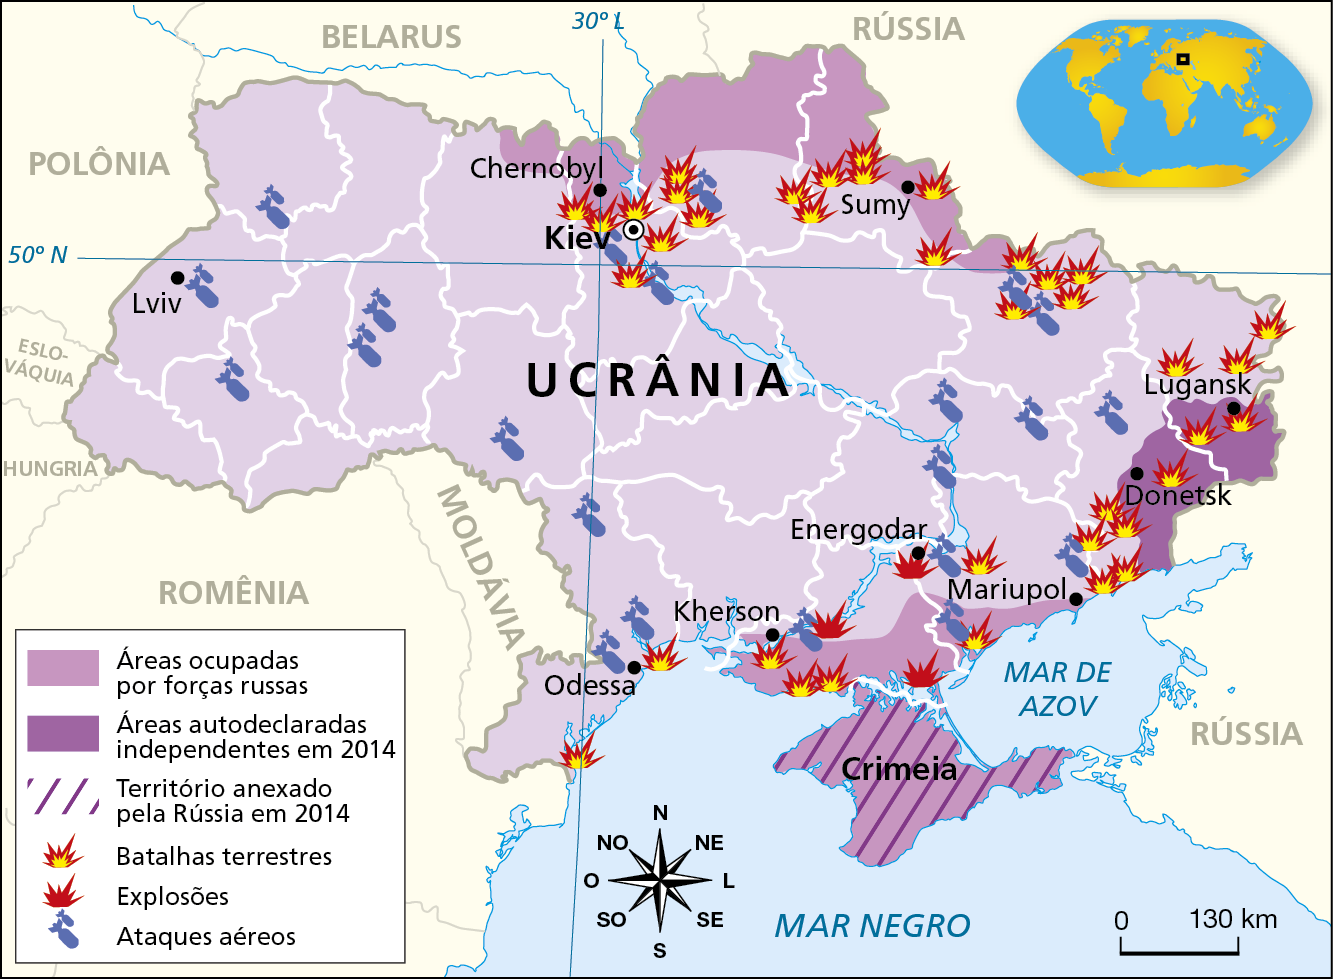 Mapa. Ucrânia: áreas invadidas e atacadas pela Rússia, março de 2022. Mapa mostrando a dinâmica de invasão russa no território da Ucrânia. Áreas ocupadas por forças russas: porção norte da Ucrânia, na região entre Chernobyl e Sumy;  entre Kherson e Mariupol, na porção sul do país; na Criméia, ao sul. Áreas autodeclaradas independentes em 2014: Donetsk e Lugansk, no extremo leste do país. Território anexado pela Rússia em 2014: Crimeia, ao sul. Batalhas terrestres:nas proximidades de Kiev (capital do país) e Sumy,  no extremo norte da Ucrânia; em Lugansk e Donetsk  no extremo leste; em Energodar, Mariupol, Kherson e Odessa, no sul do país. Explosões: em Kherson e Energodar, no sul do país. Ataques aéreos: áreas situadas no extremo norte, nas proximidades de Kiev;  em Lviv e outras áreas do oeste do país; no sudeste, em Kherson e Odessa, no sul do país; porção leste, em Energodar e Mariupol. Na parte inferior, rosa dos ventos e escala de 0 a 130 quilômetros.